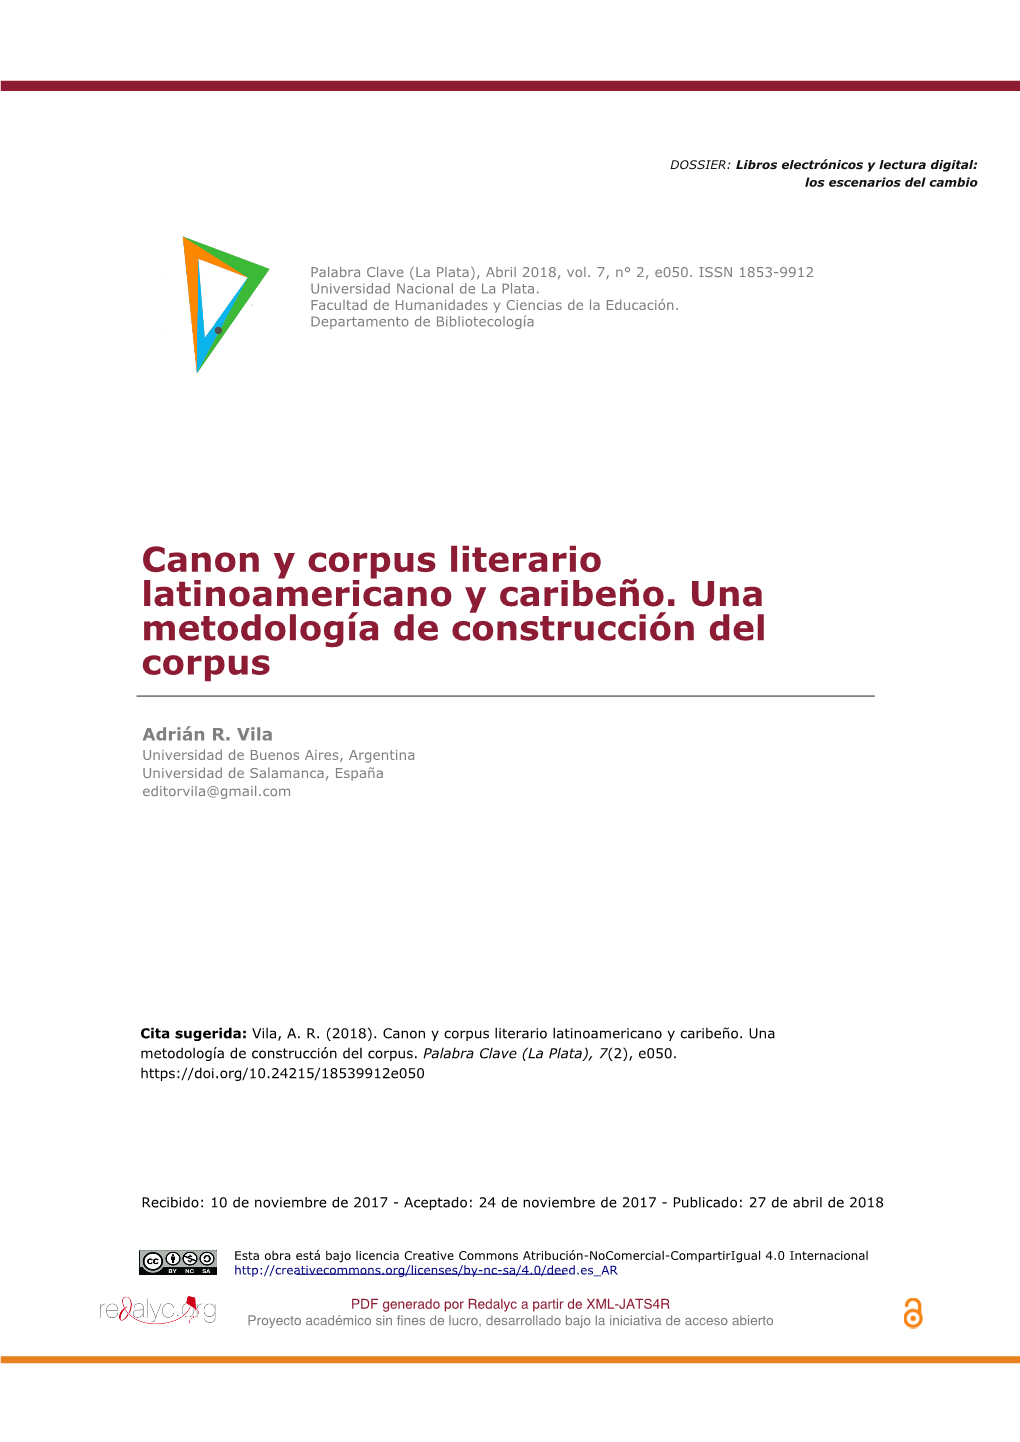 Canon Y Corpus Literario Latinoamericano Y Caribeño. Una Metodología De Construcción Del Corpus